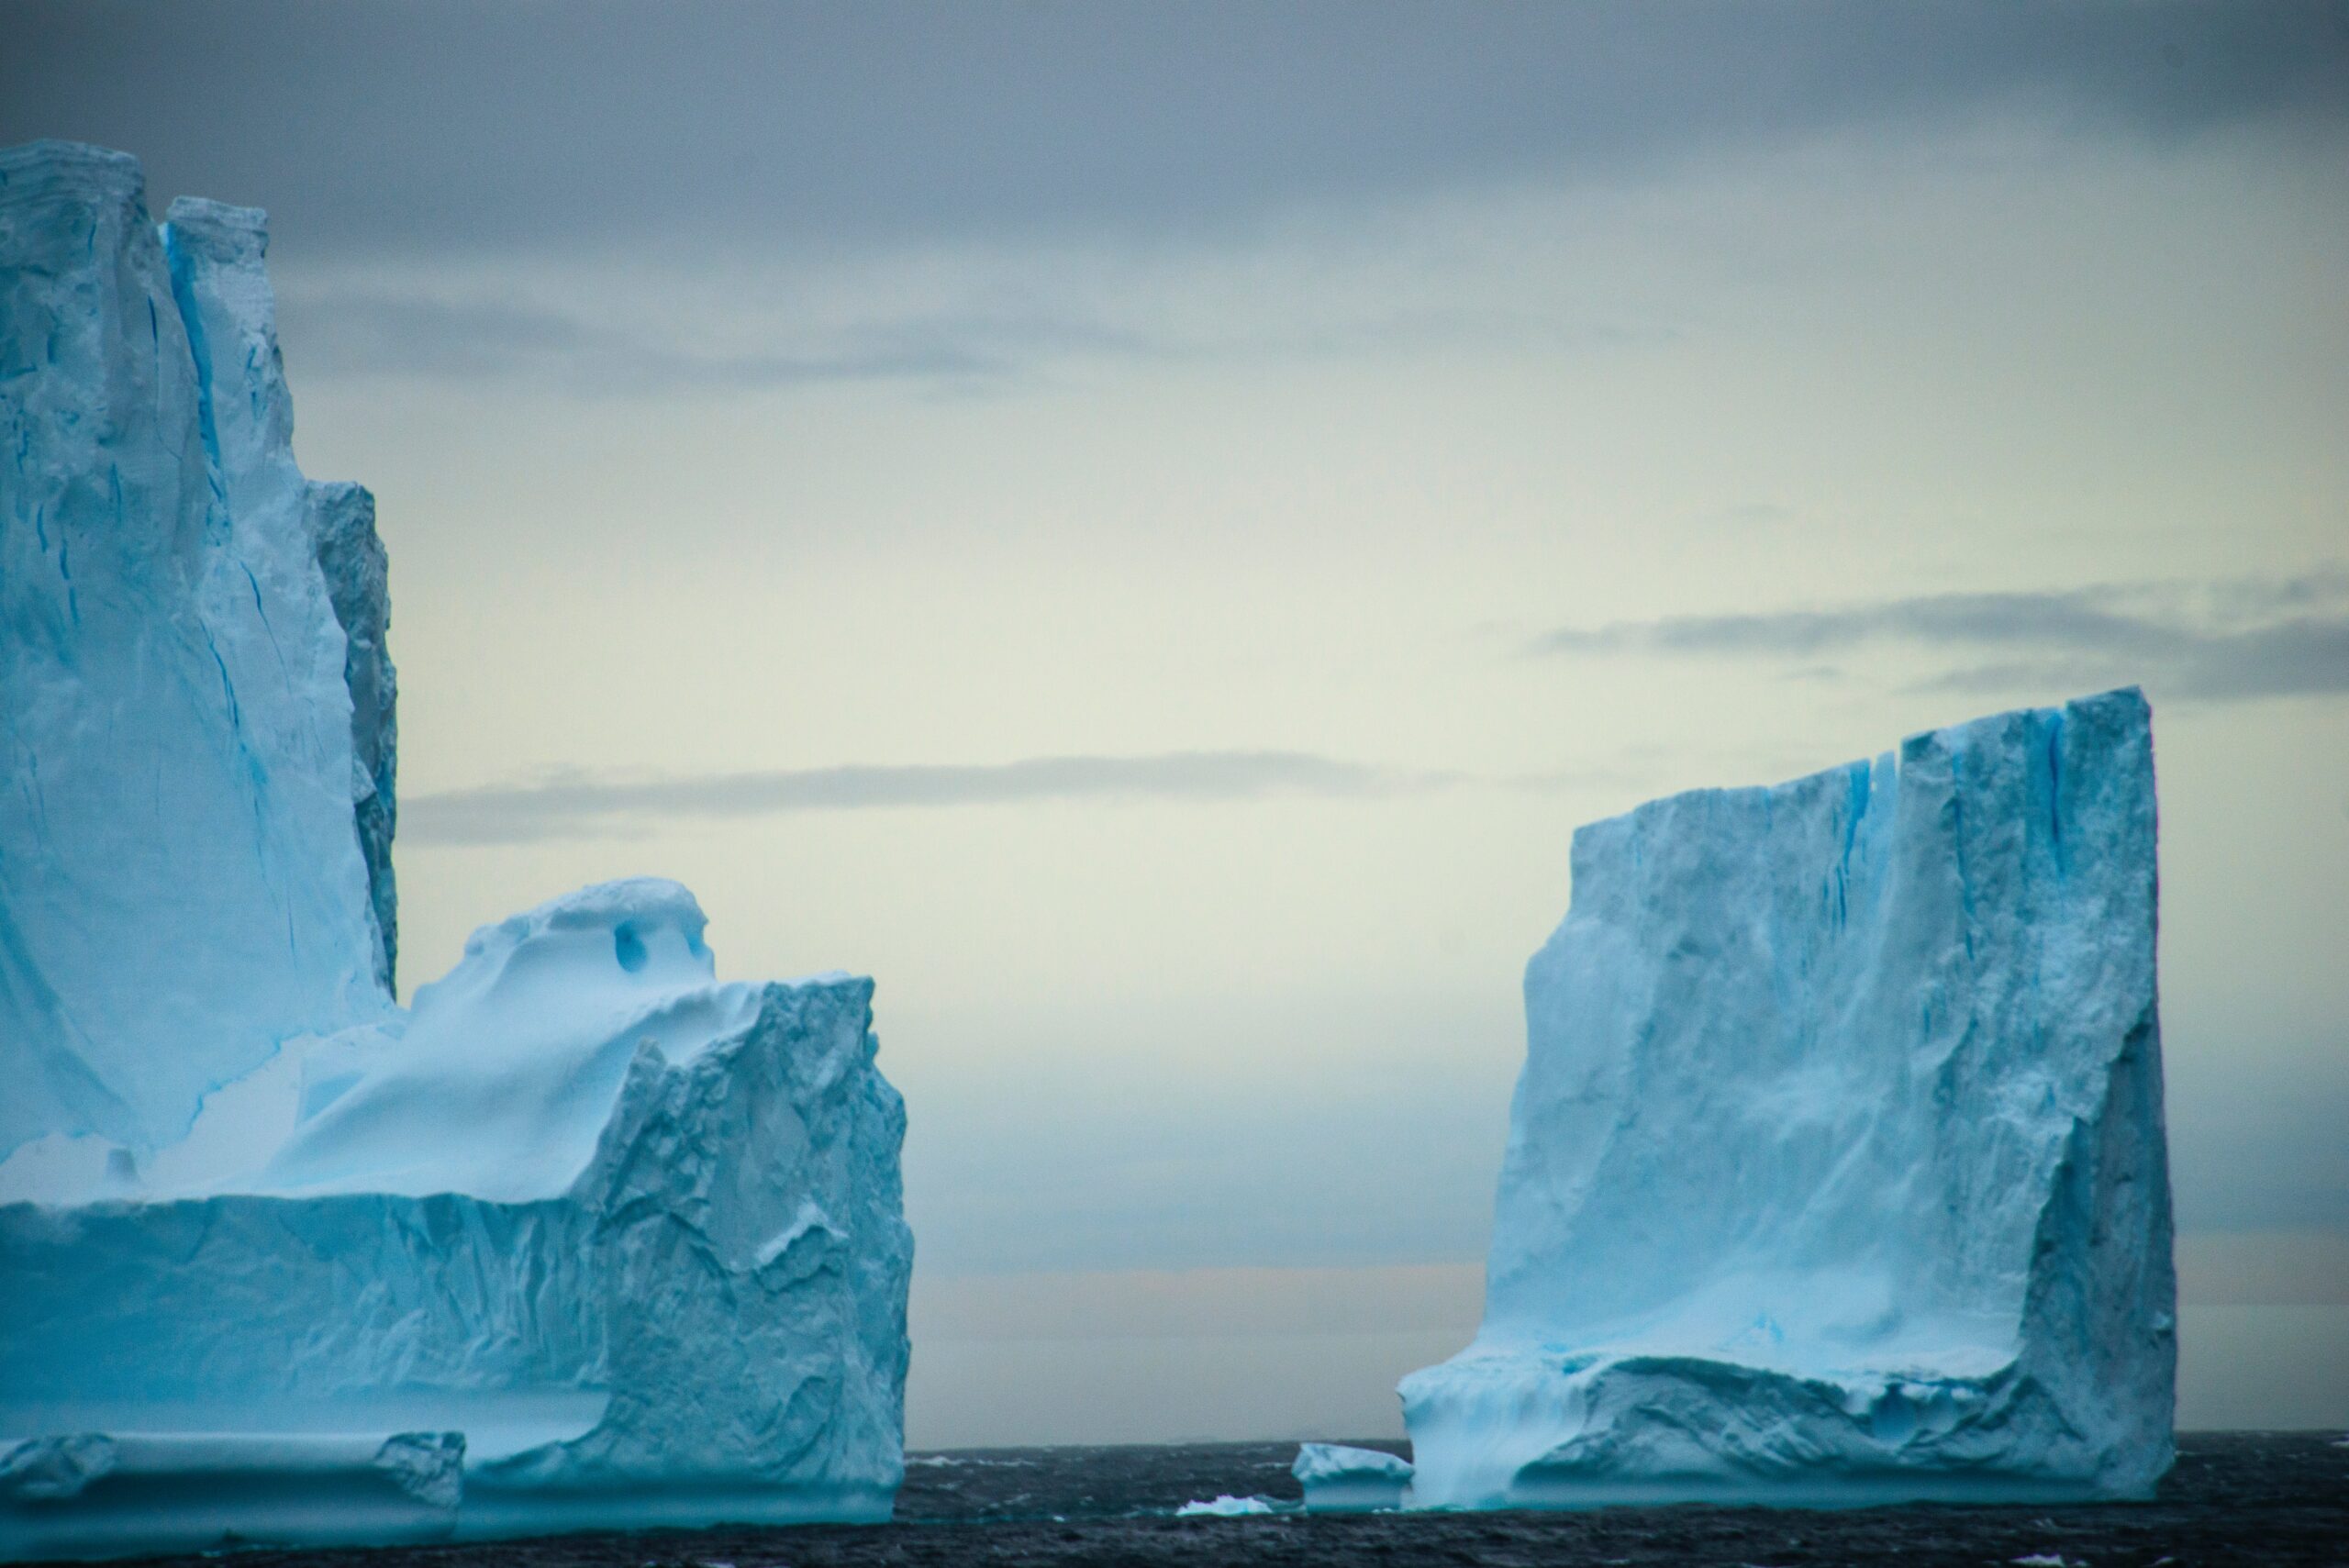 Derretimento da Antártica desacelera corrente oceânica dramaticamente, diz relatório